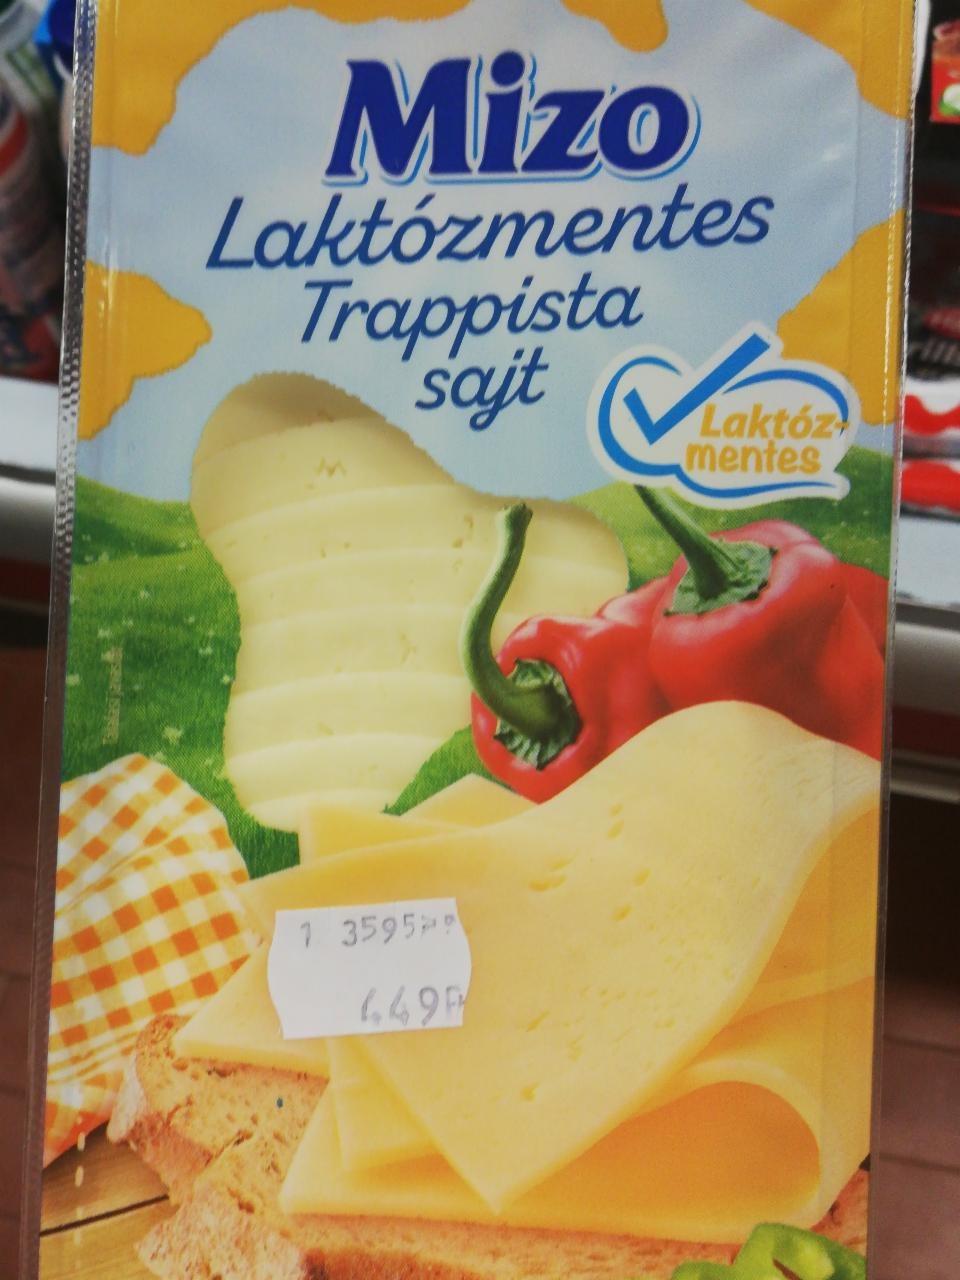 Képek - Mizo szeletelt laktózmentes trappista sajt 125 g